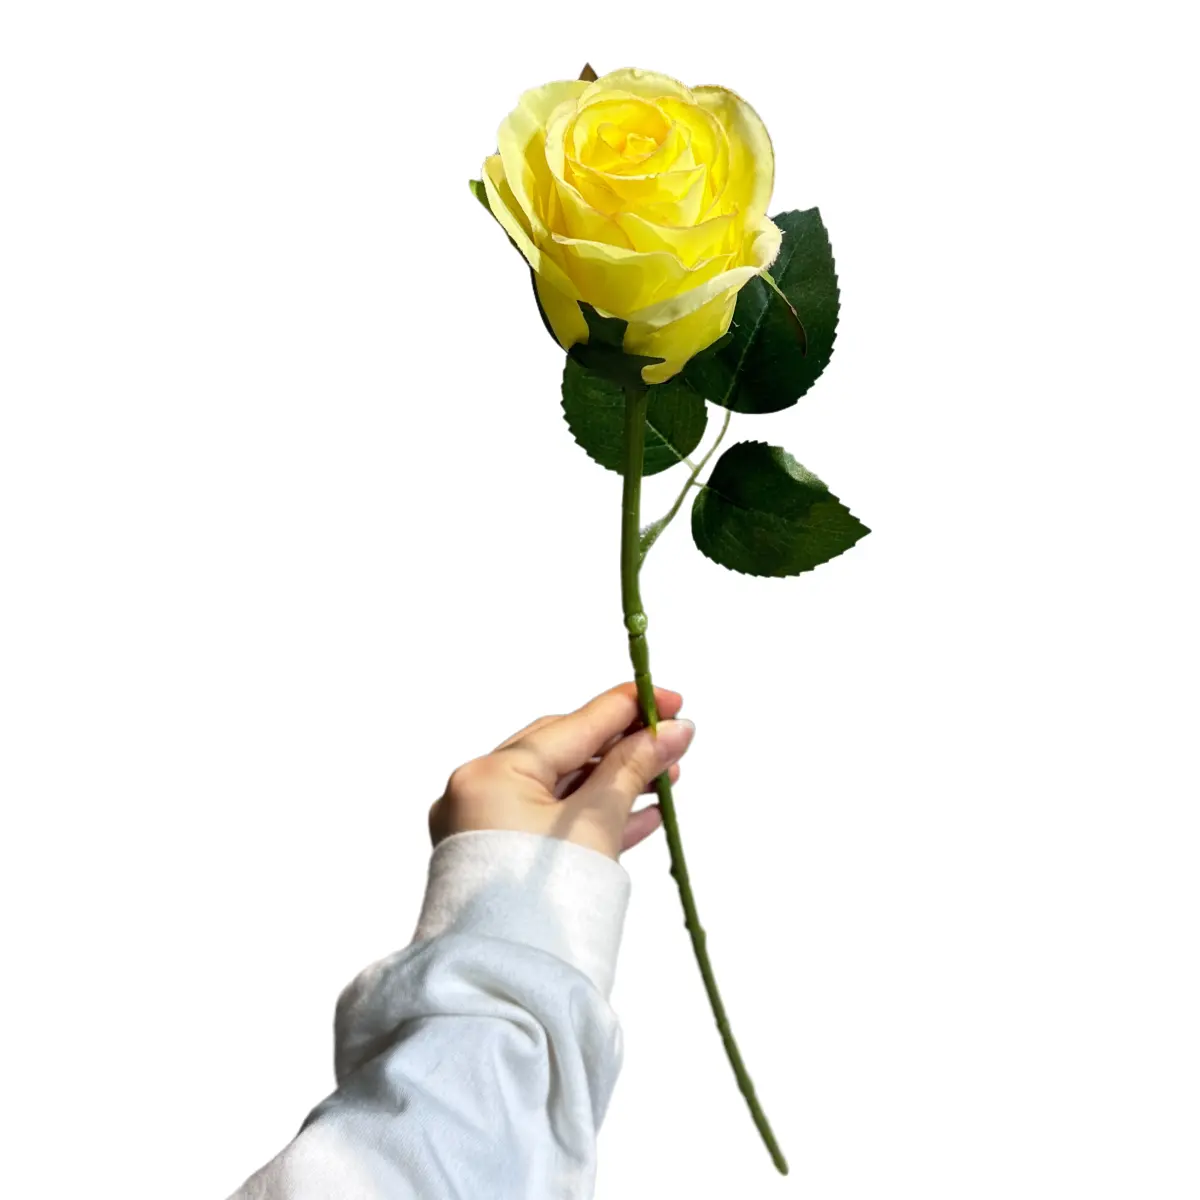 सुंदर और नवीनतम उत्पाद सफेद नकली फूल रेशम कृत्रिम फूल गुलाब शादी के घर की सजावट के लिए उपयोग किया जाता है